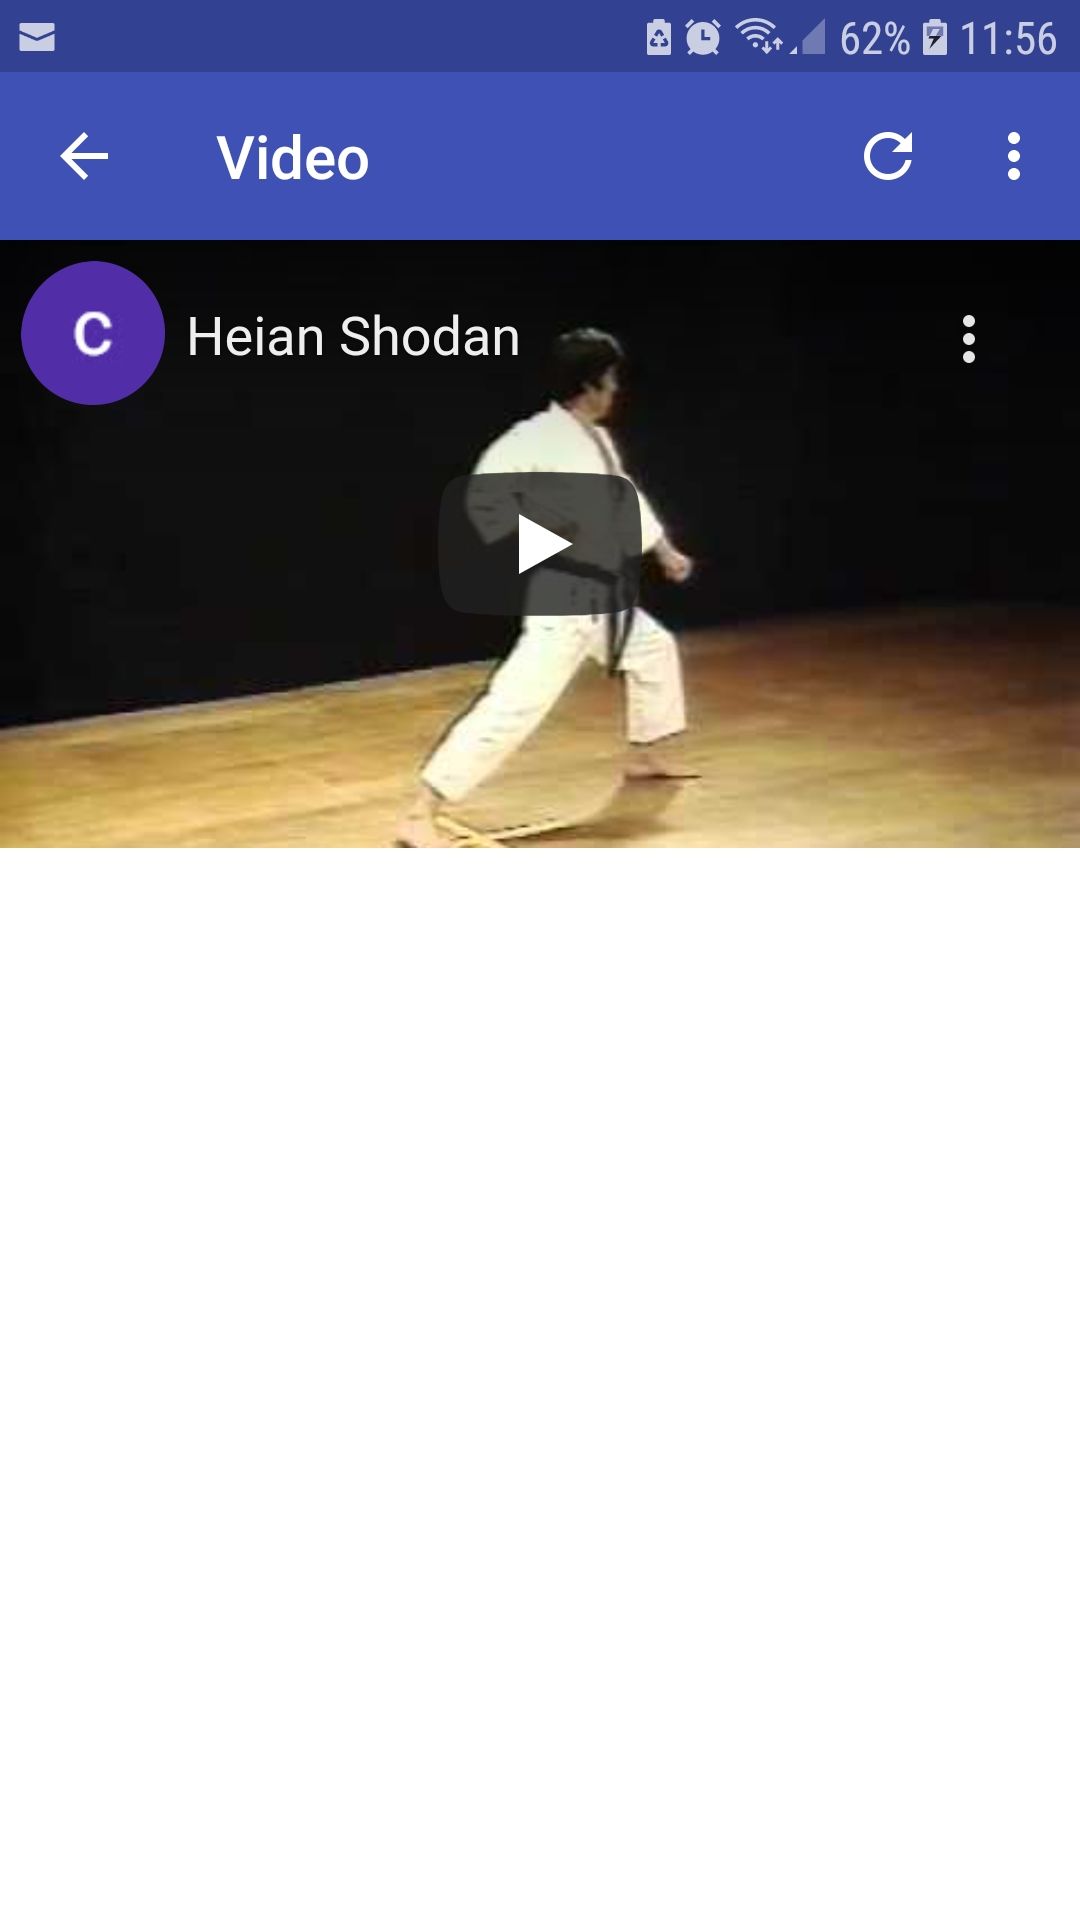 26 shotokan karate katas mobile app video